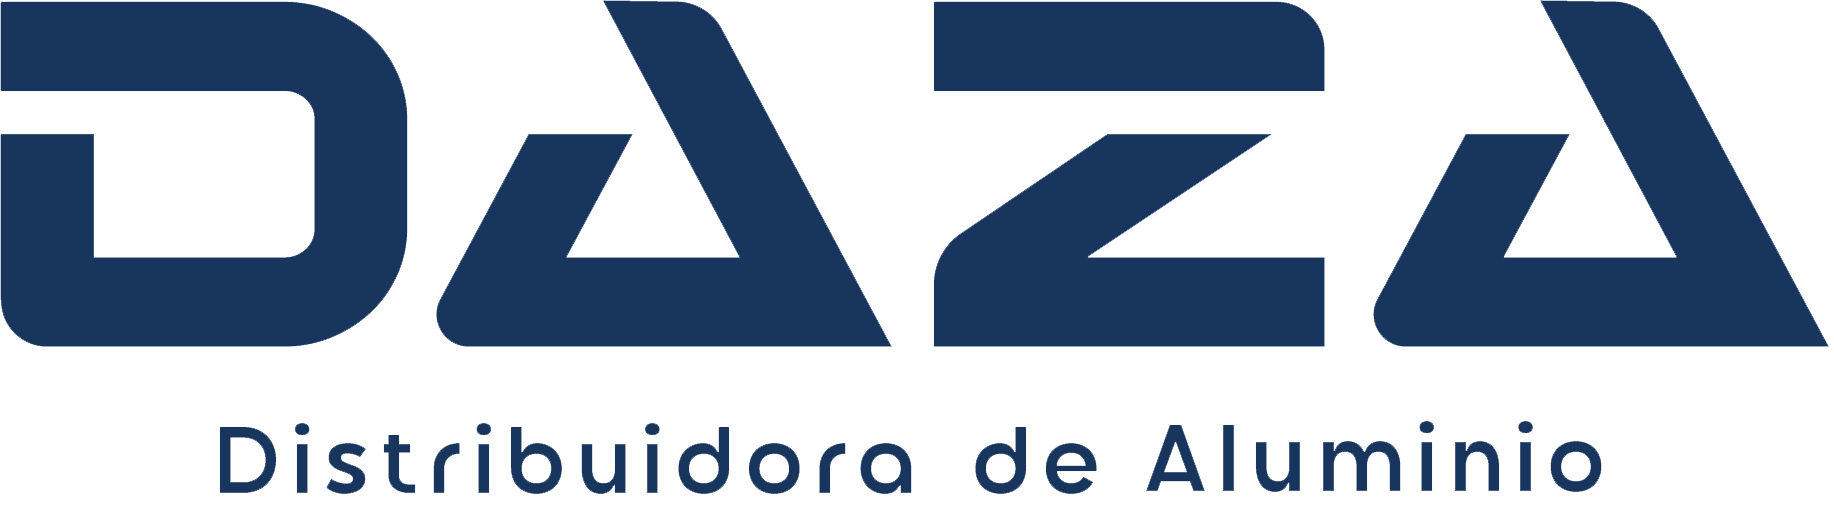 DAZA - Distribuidora de Aluminio